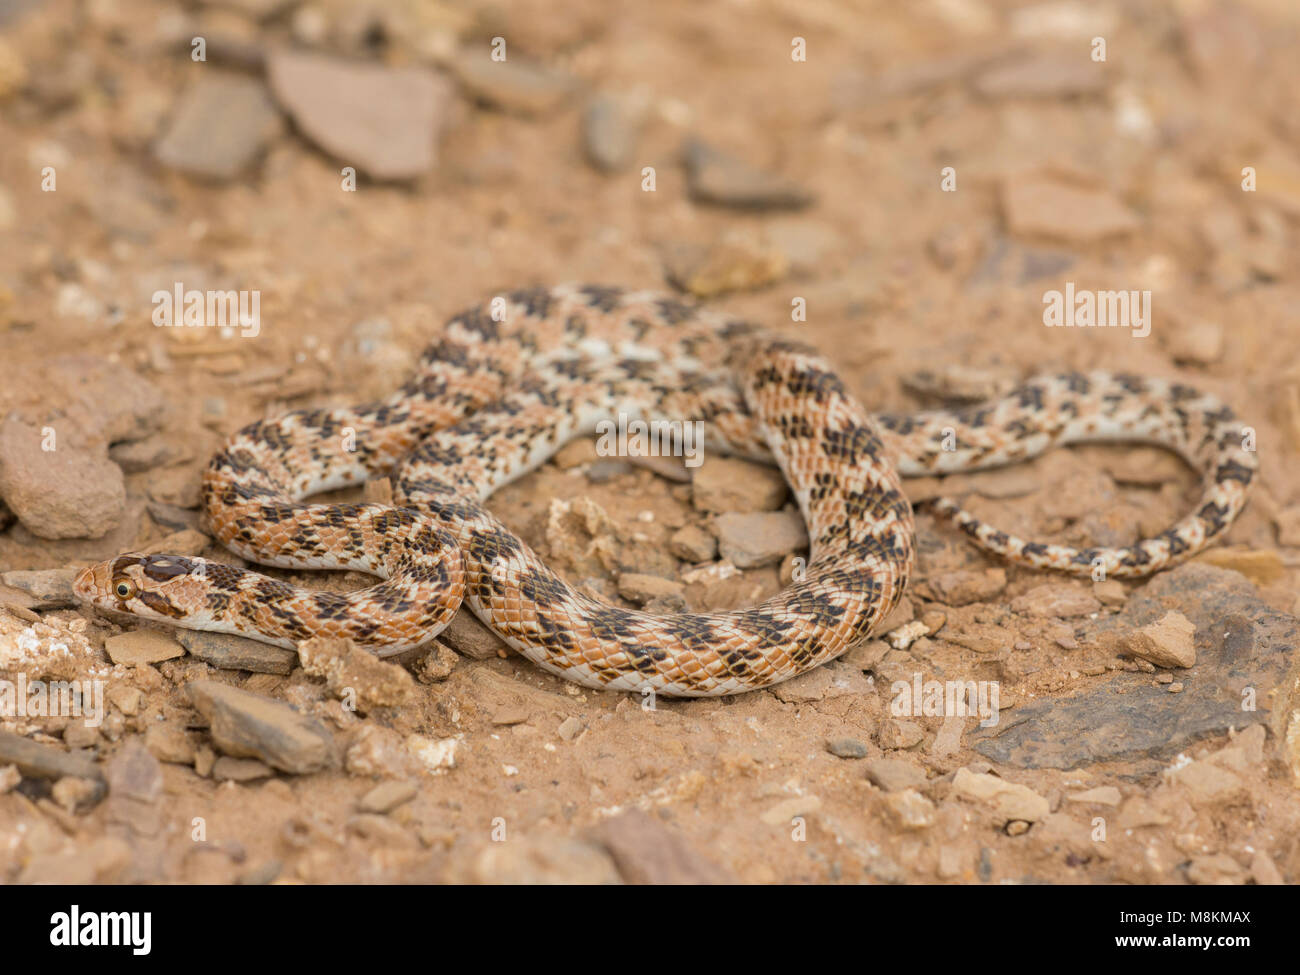 Gekrönt Leafnose Schlange (Lytorhynchus diadema) in der marokkanischen Wüste in Nordafrika. Stockfoto